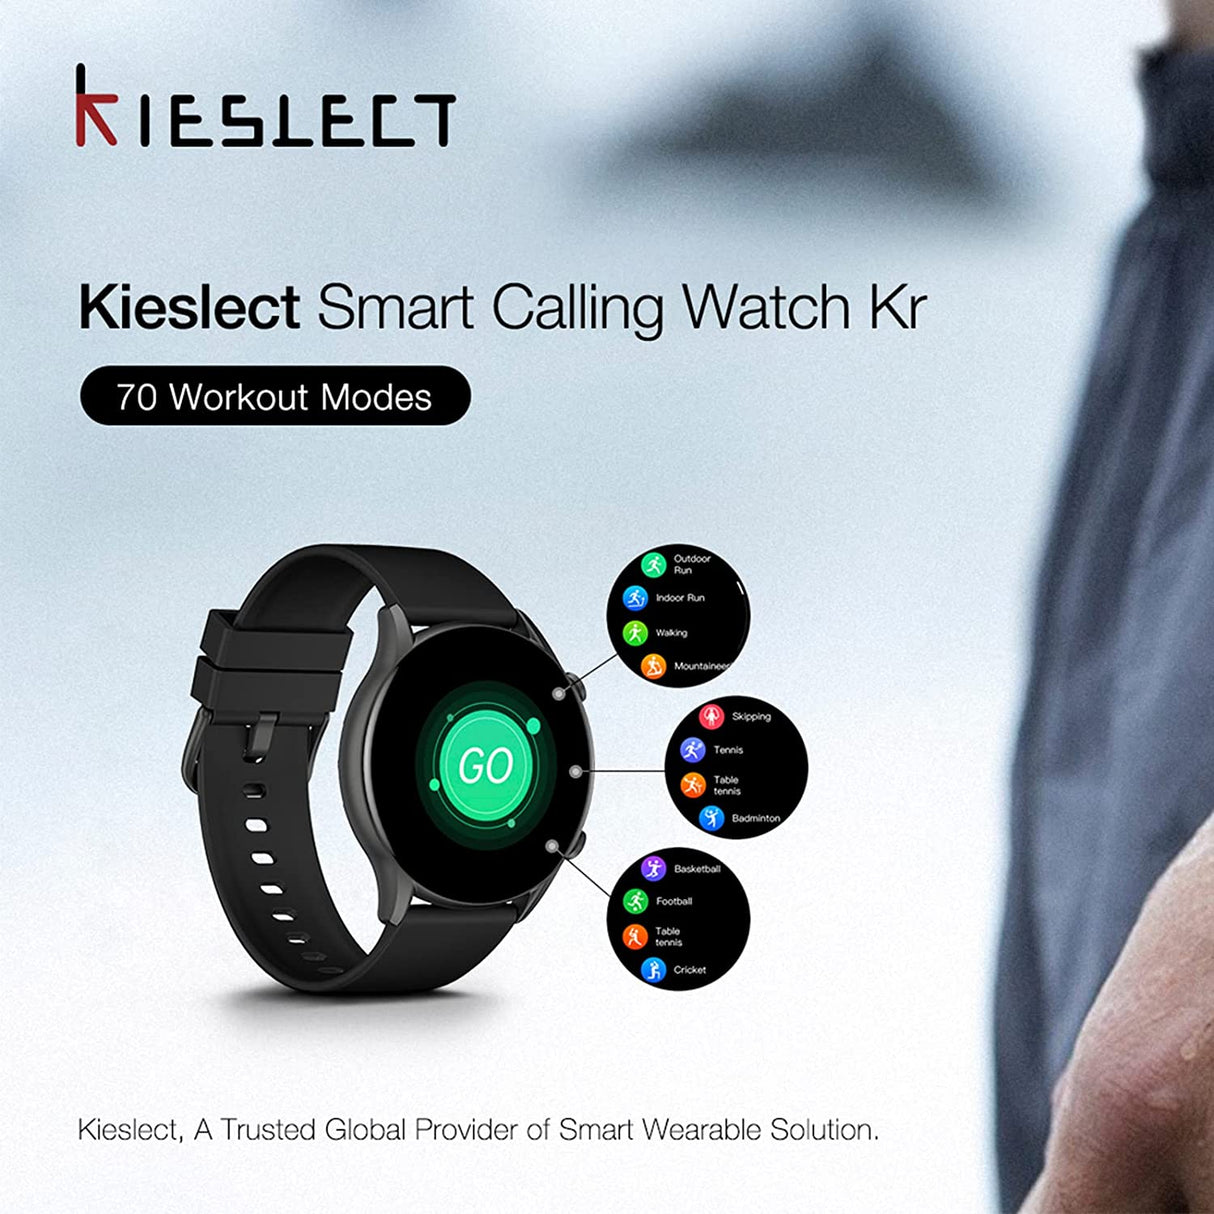 KR Kieslect -  ساعة الذكية للمكالمات لون اسود
                                                                                                                                        